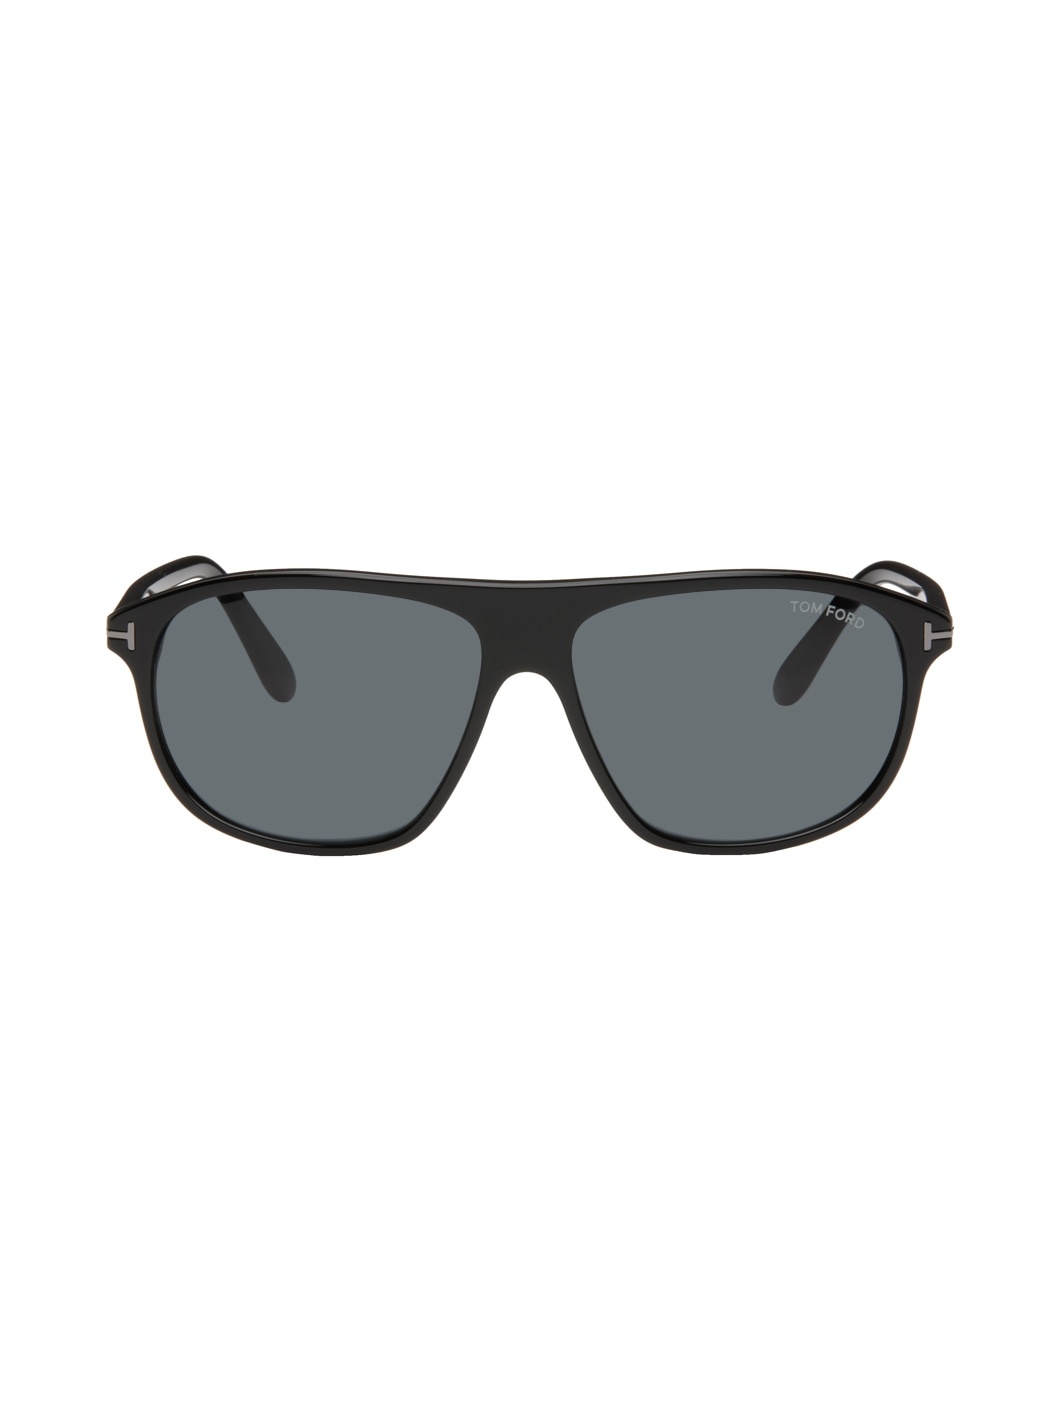 Black Prescott Sunglasses - 1